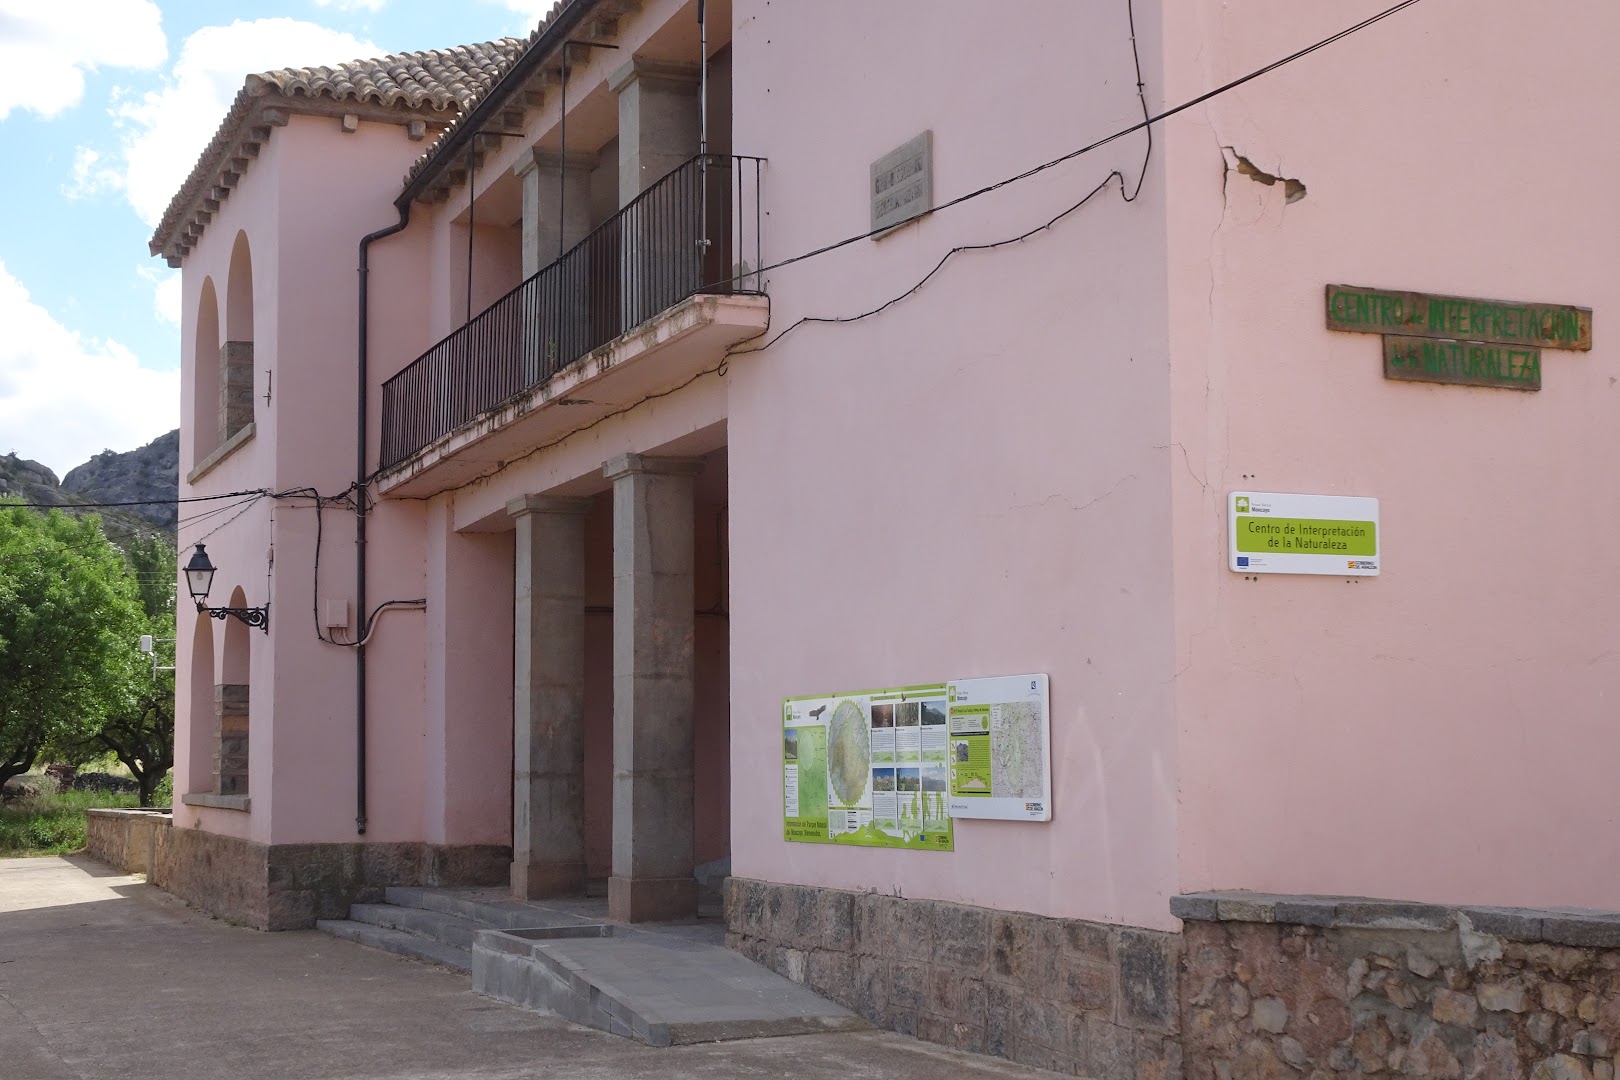 Centro de interpretación de Calcena (Parque Natural del Moncayo)